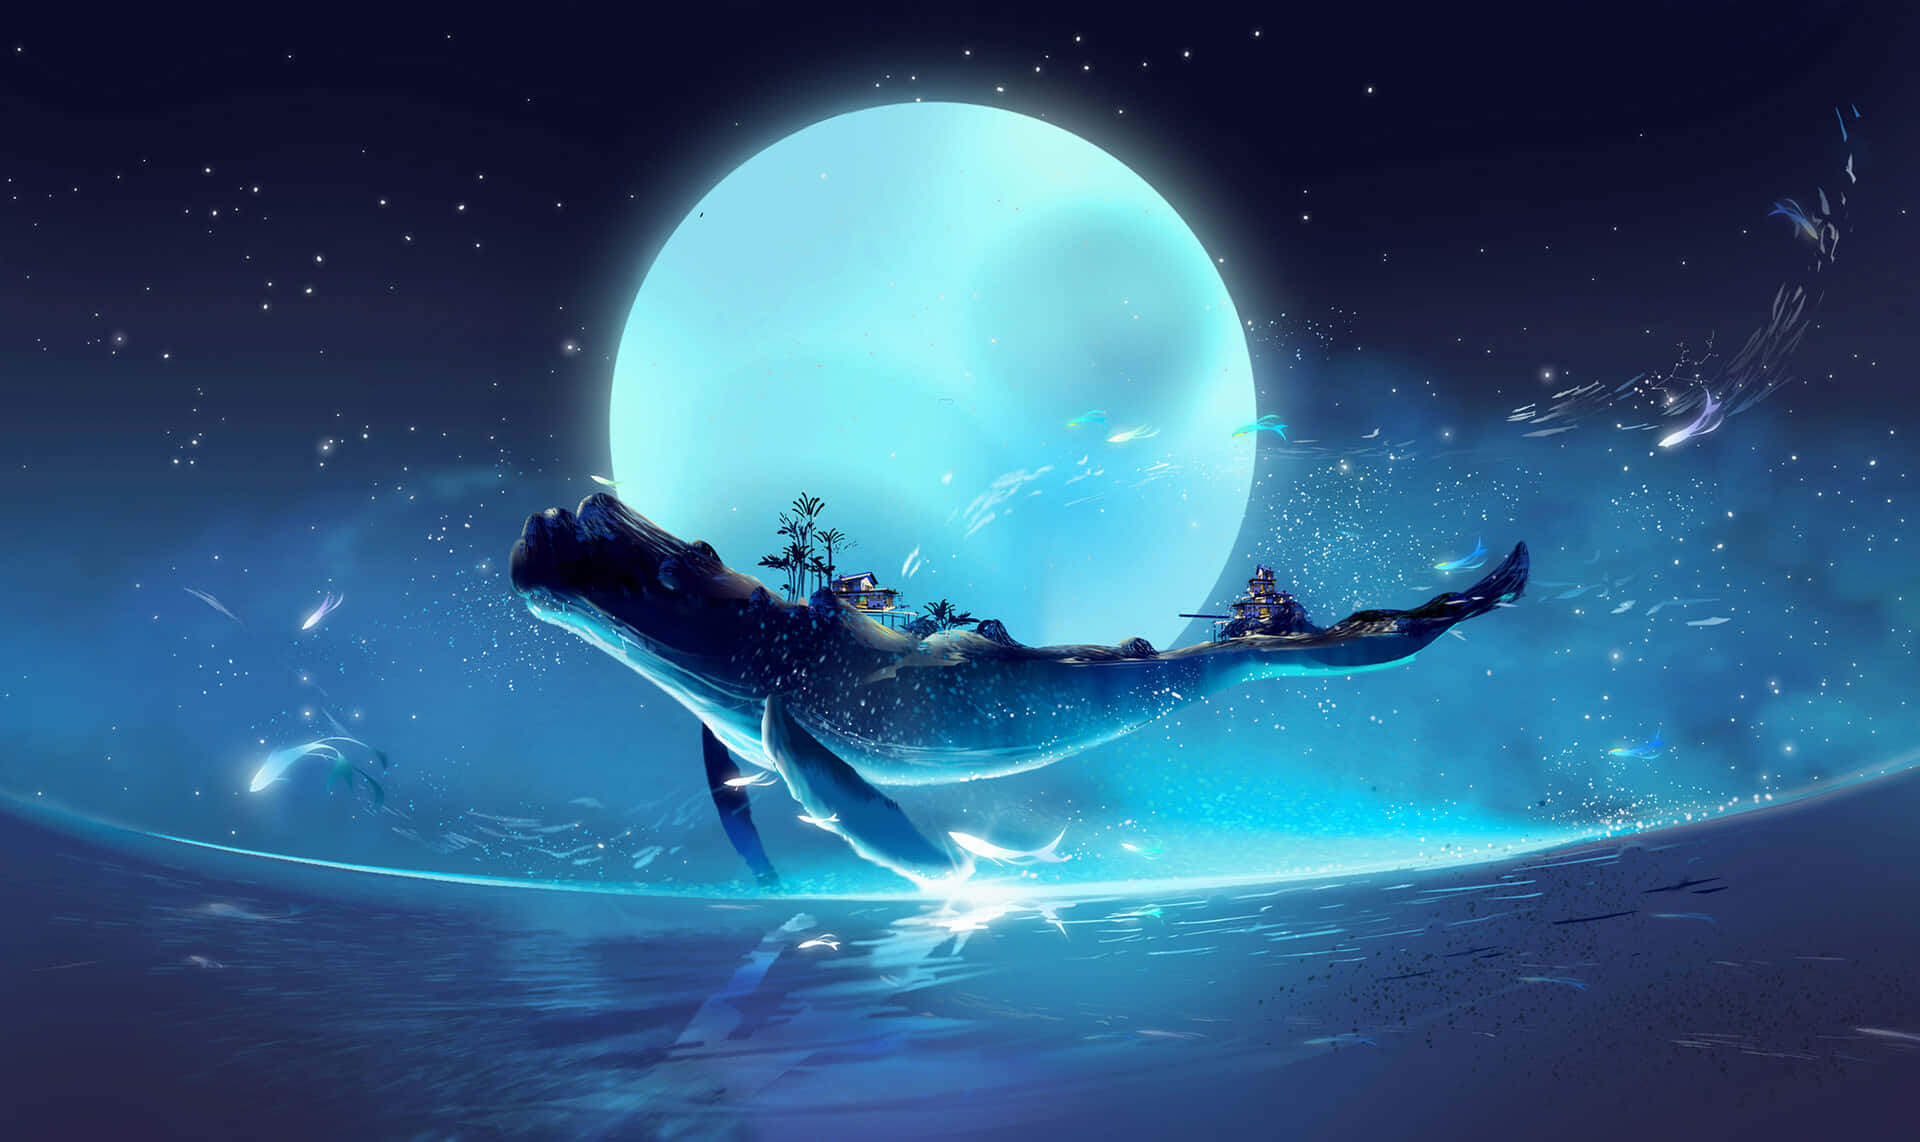 Blauerwal Mond Sprung Ozean Fantasy Kunst Bild.